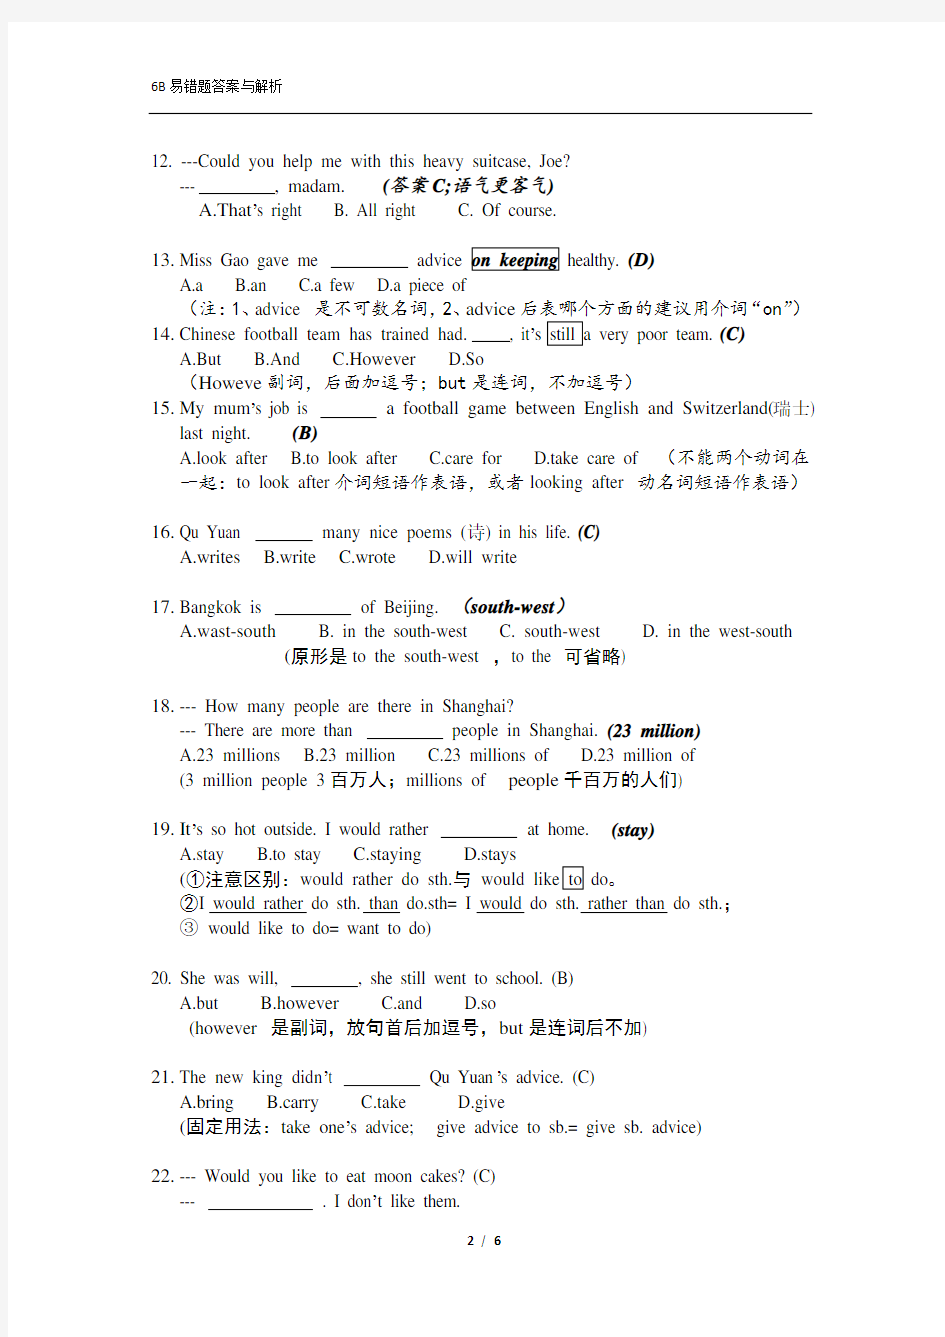 上海英语6B期末考试易错题——词汇与语法选择题(答案与解析